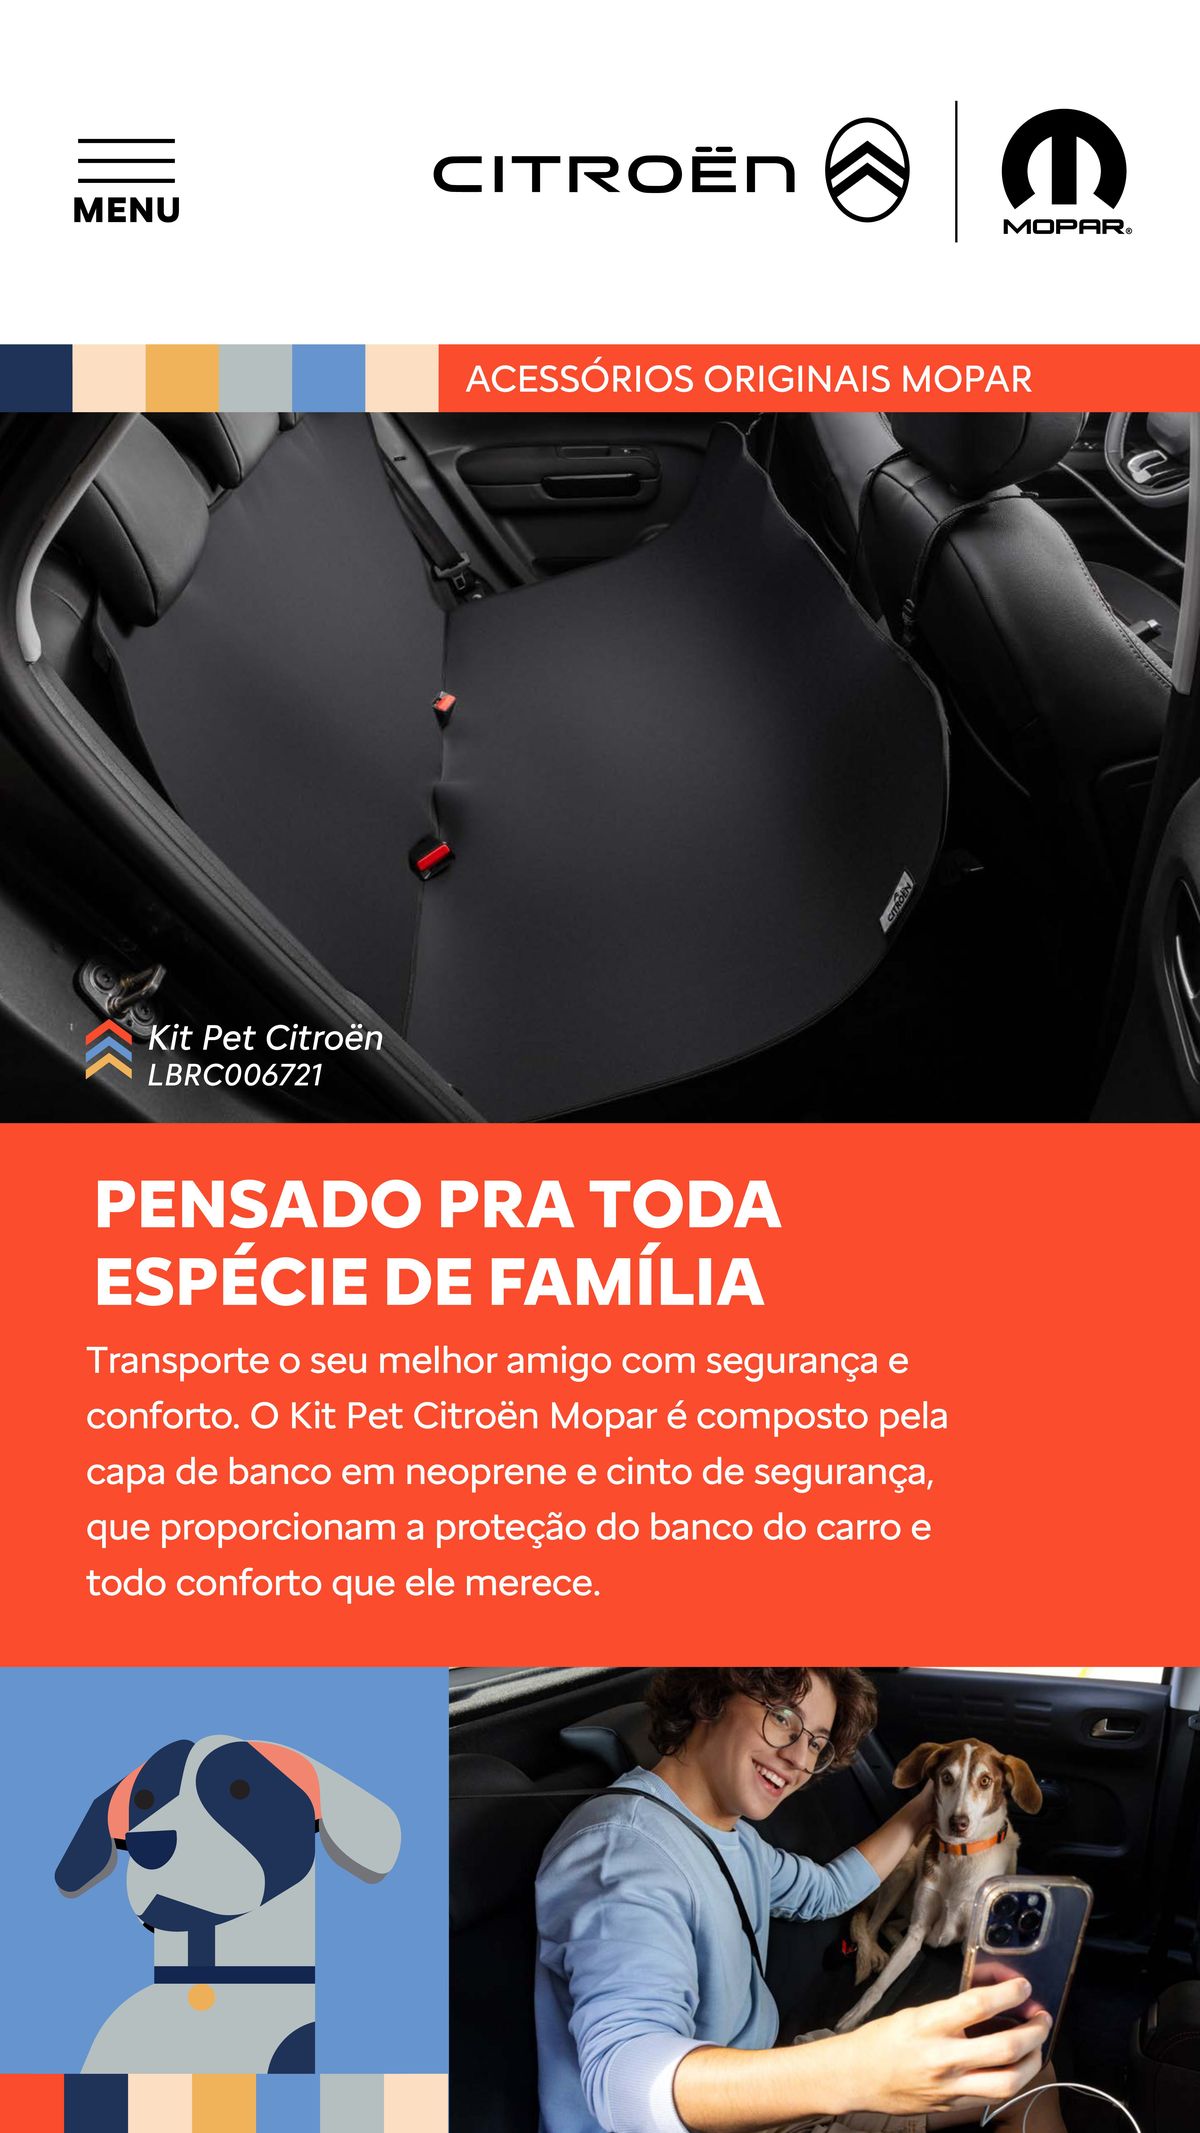 Kit Pet Citroën - Capa de Banco em Neoprene e Cinto de Segurança